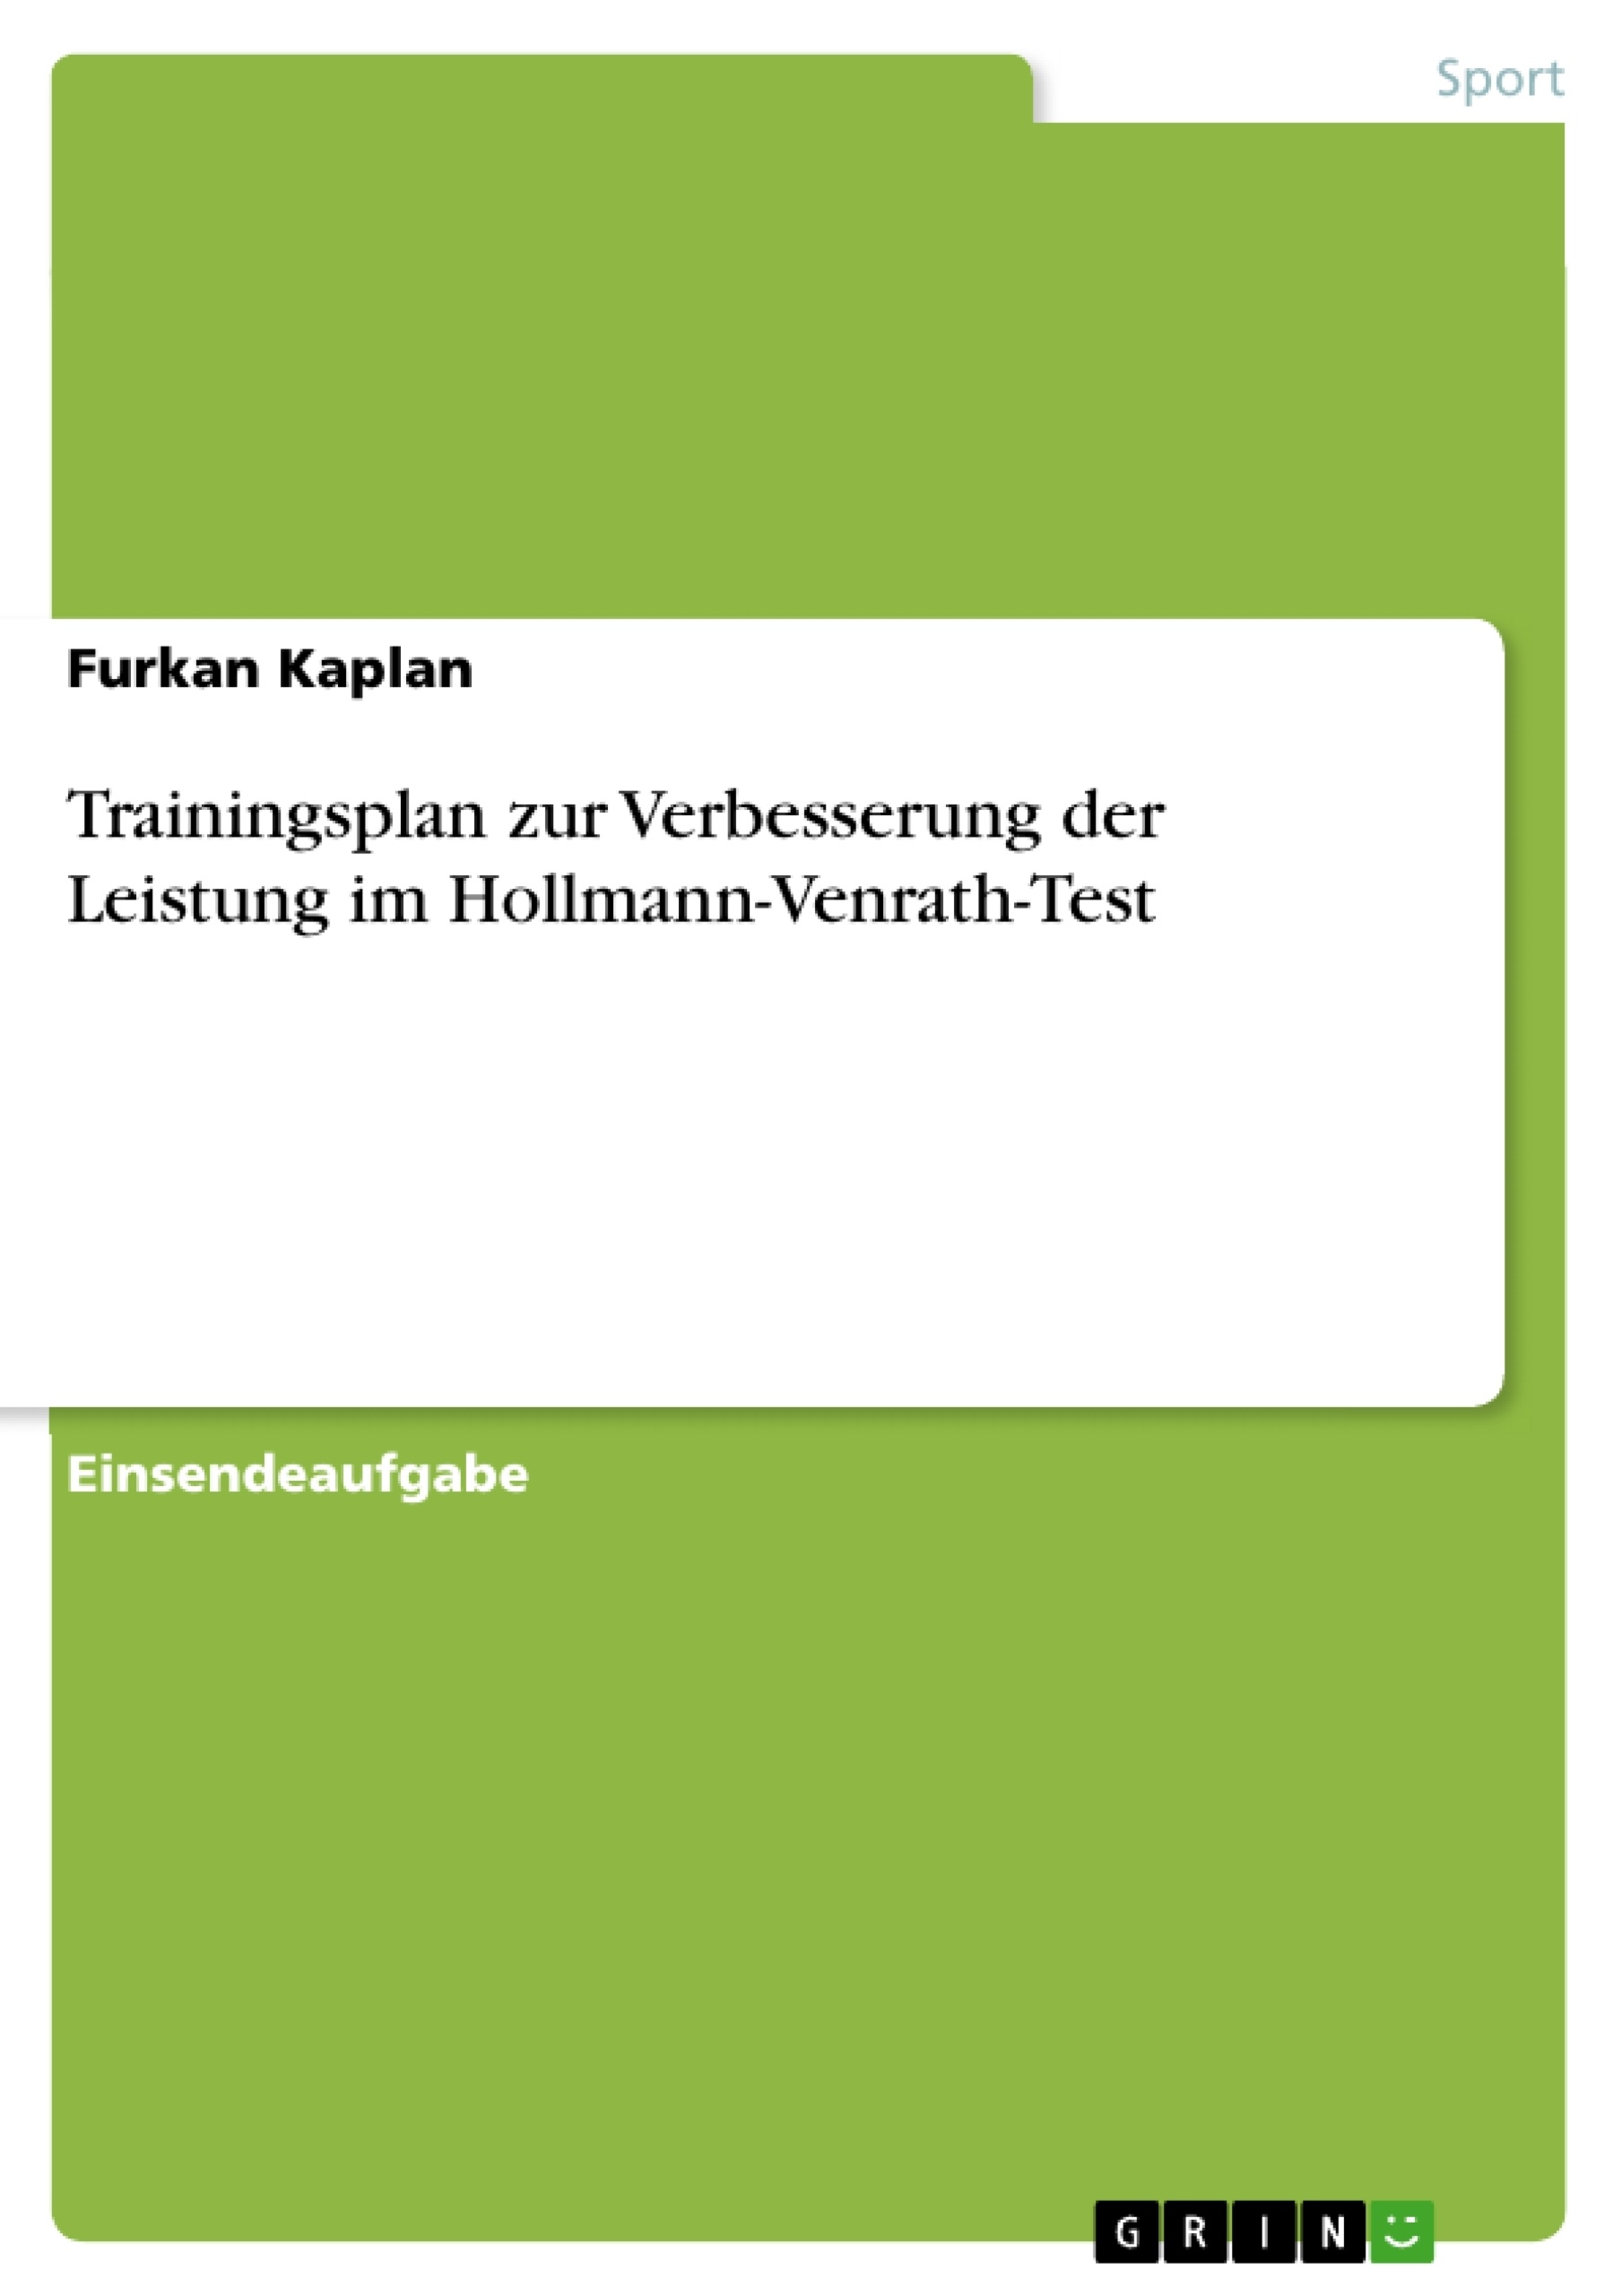 Title: Trainingsplan zur Verbesserung der Leistung im Hollmann-Venrath-Test